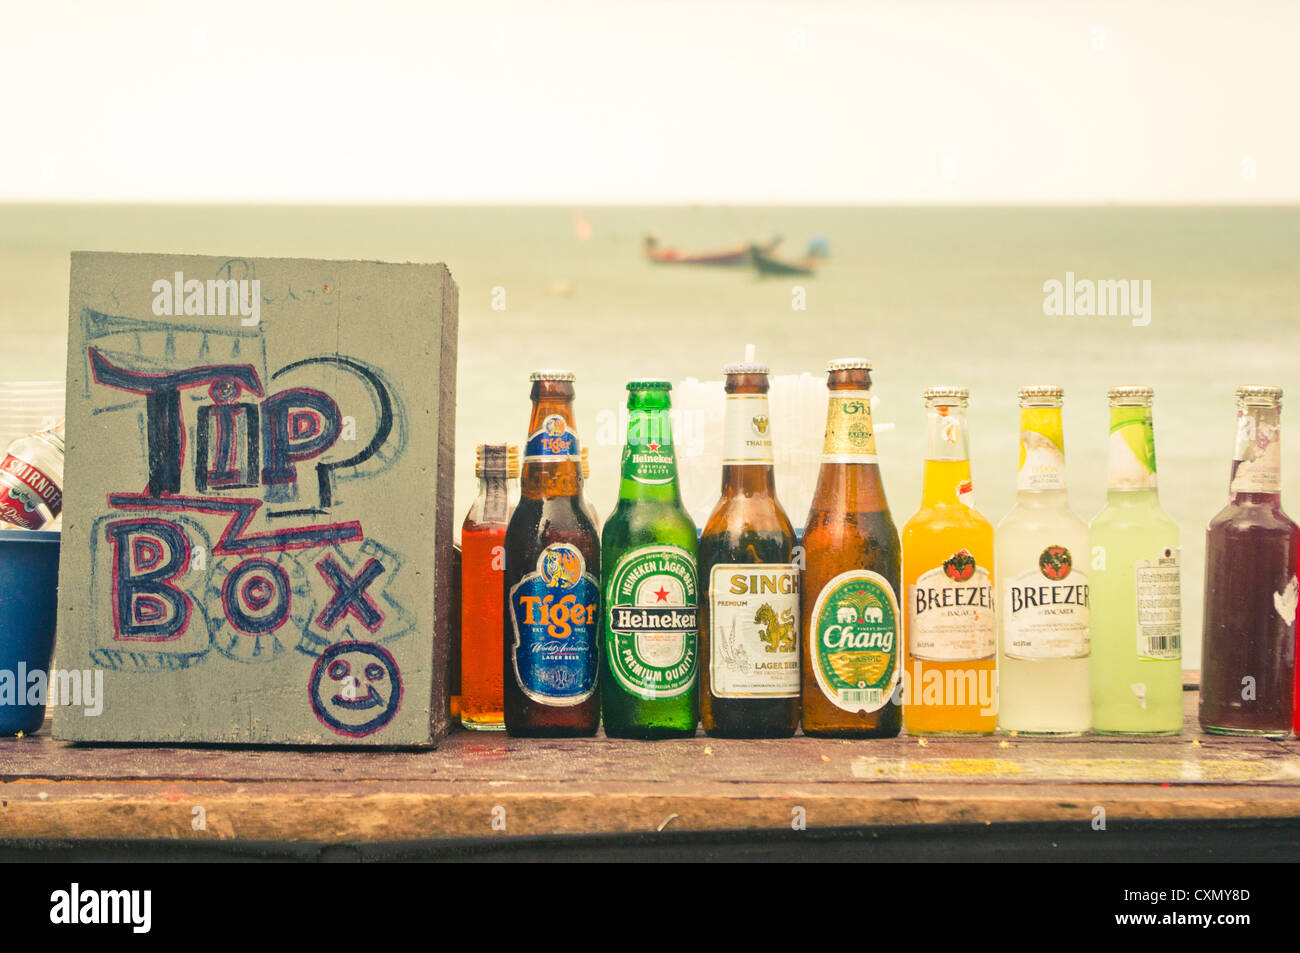 Bier und alkoholische Getränke zum Verkauf an Thailand Strand  Stockfotografie - Alamy